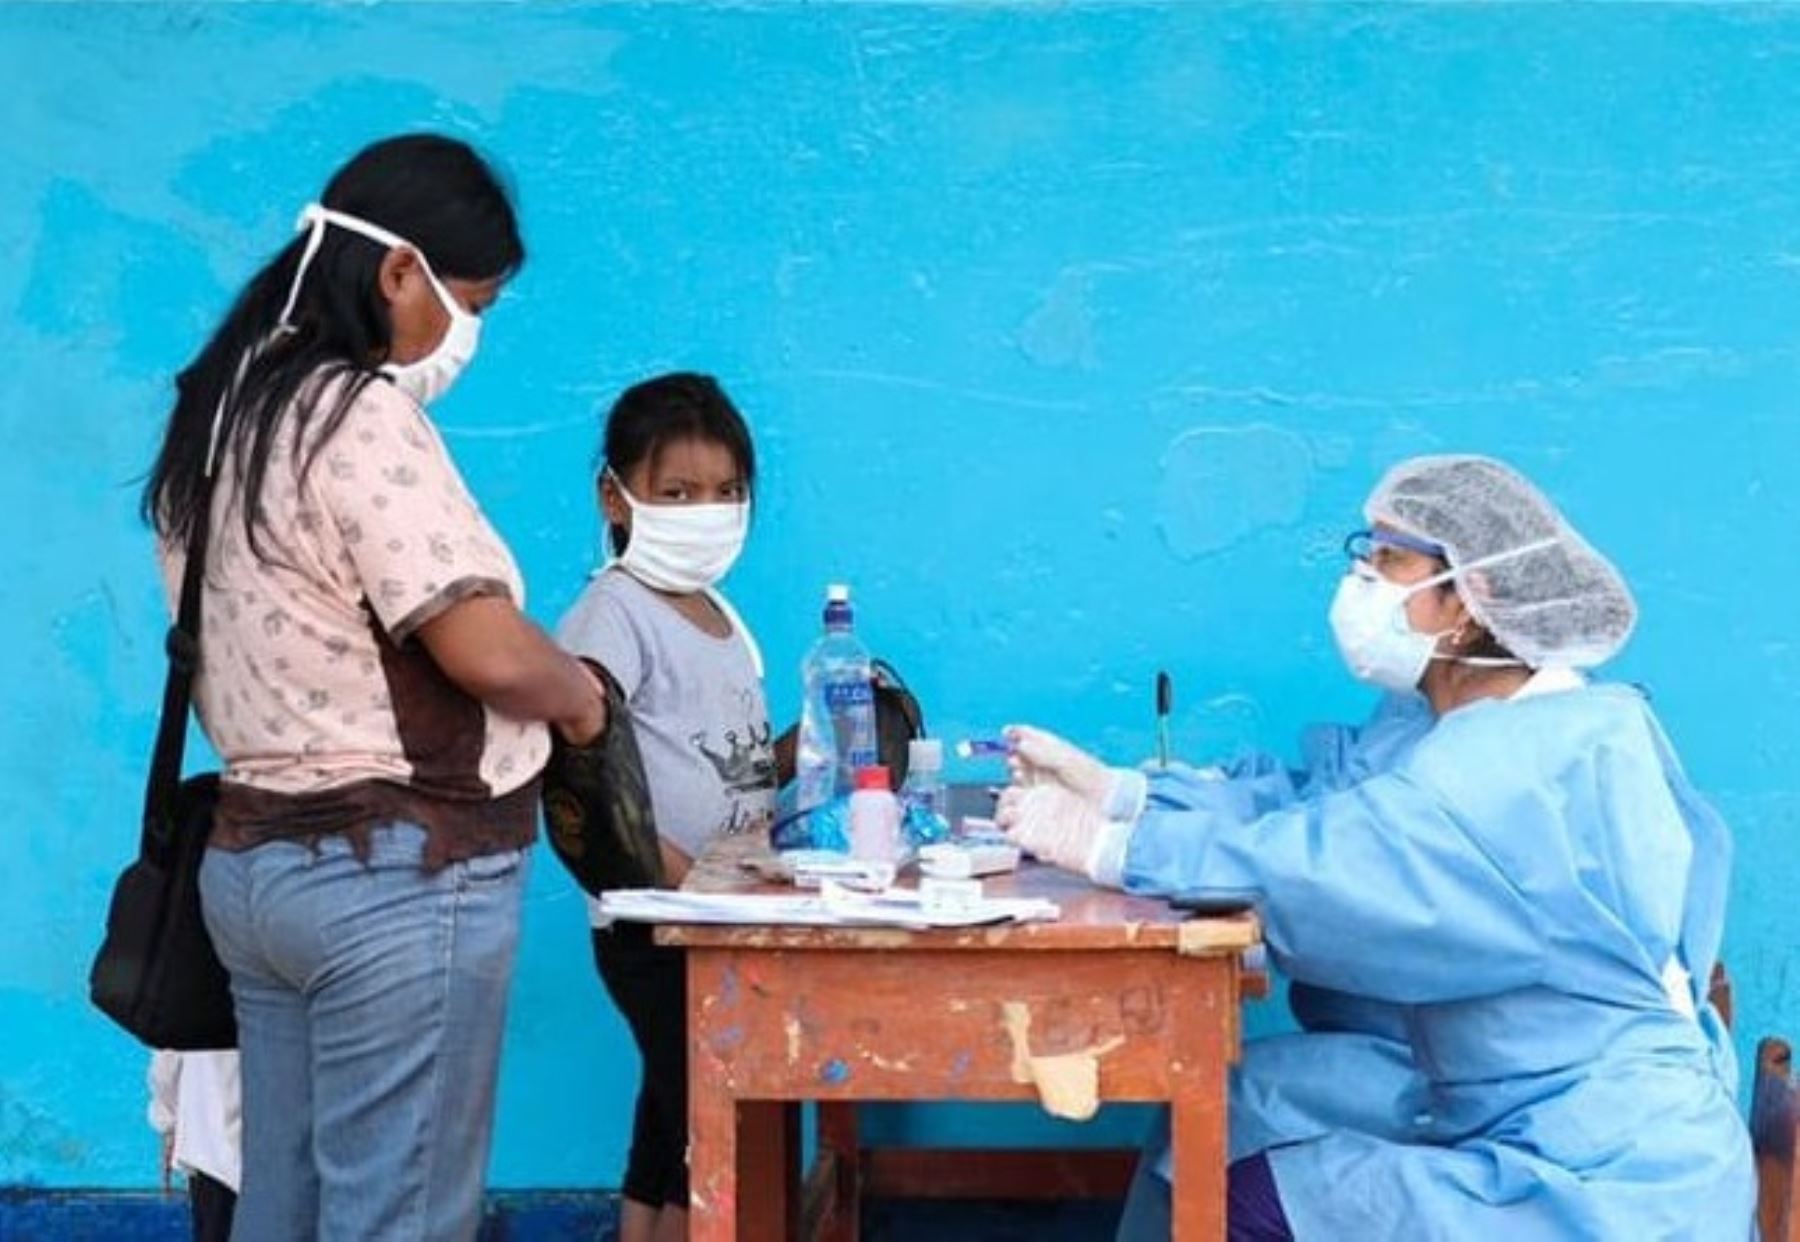 Más de 170,000 atenciones médicas gratuitas se brindaron a comunidades indígenas de Loreto, destacó el Ministerio de Salud (Minsa).